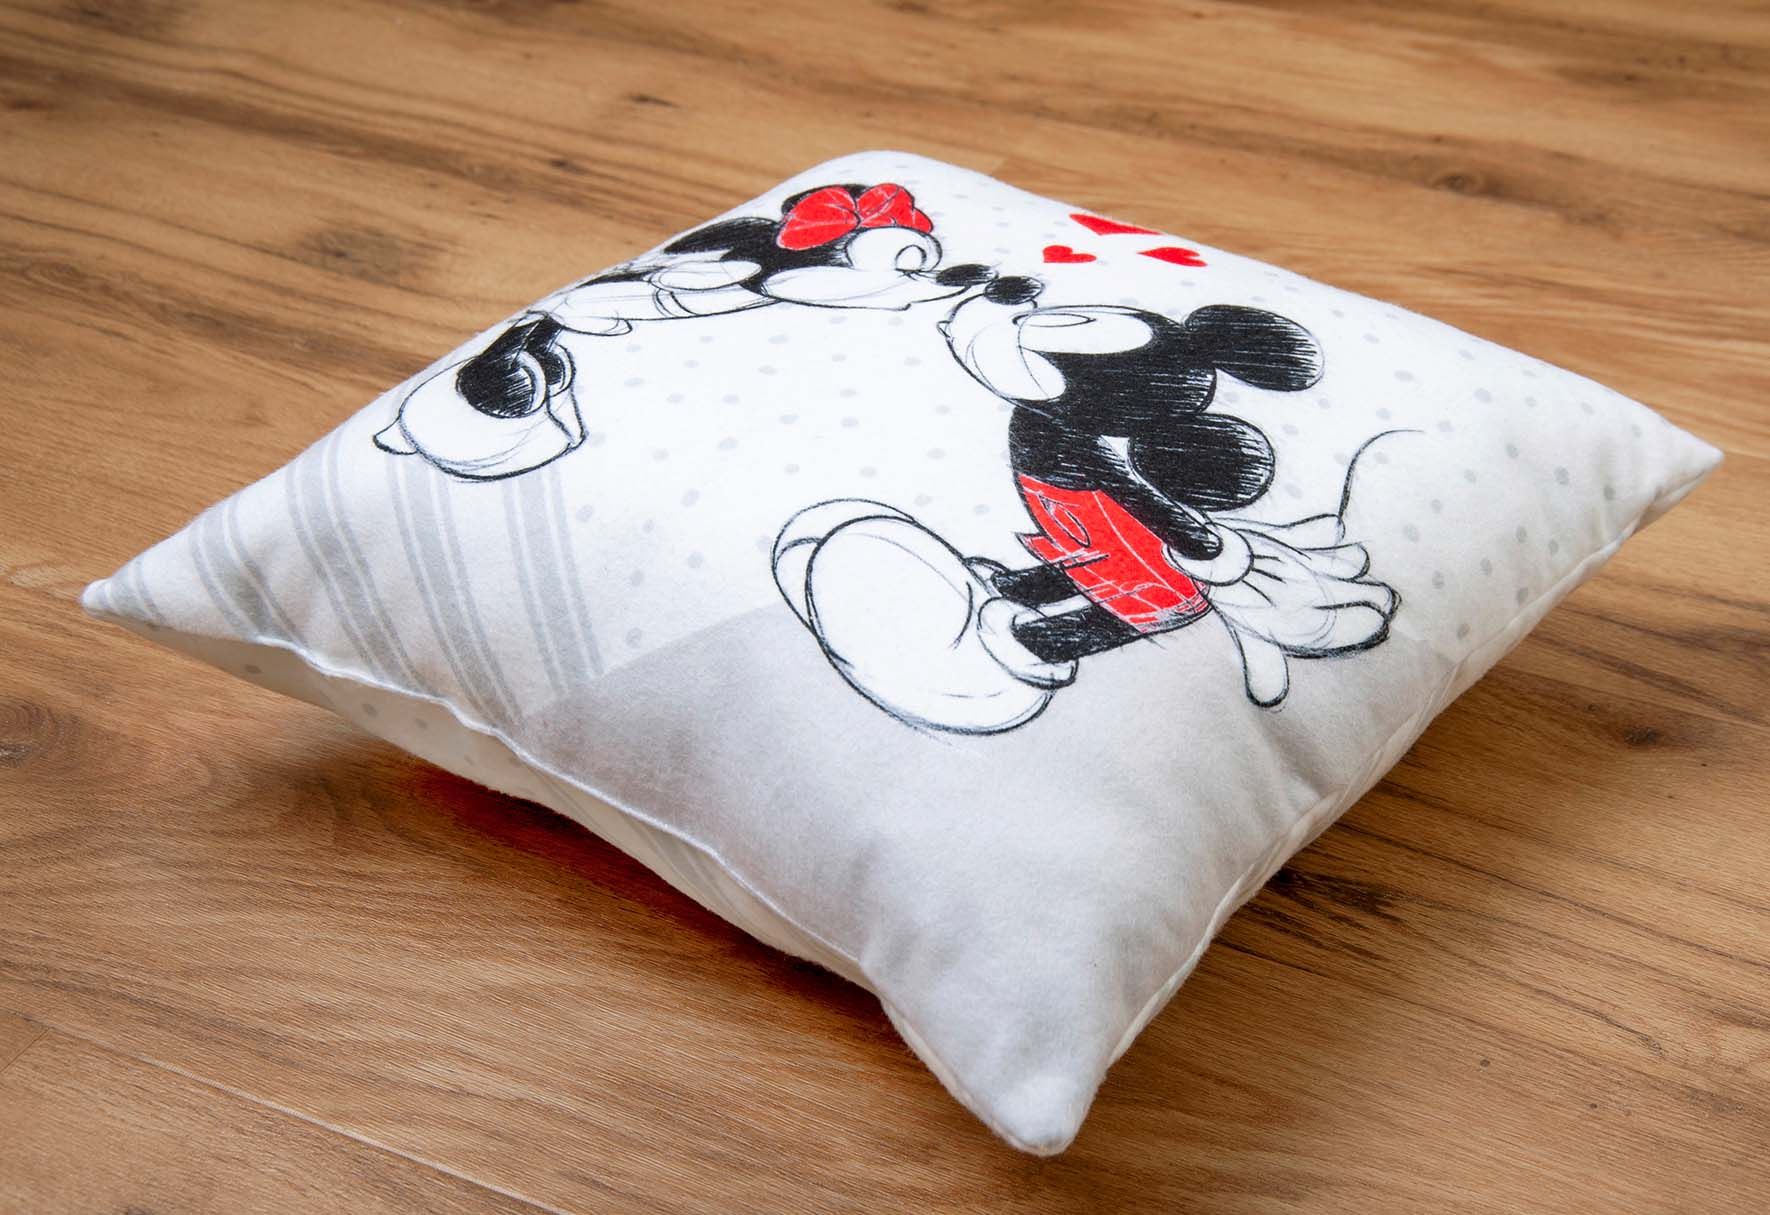 Mickey & Minnie Kissen - Love 40 x 40 cm